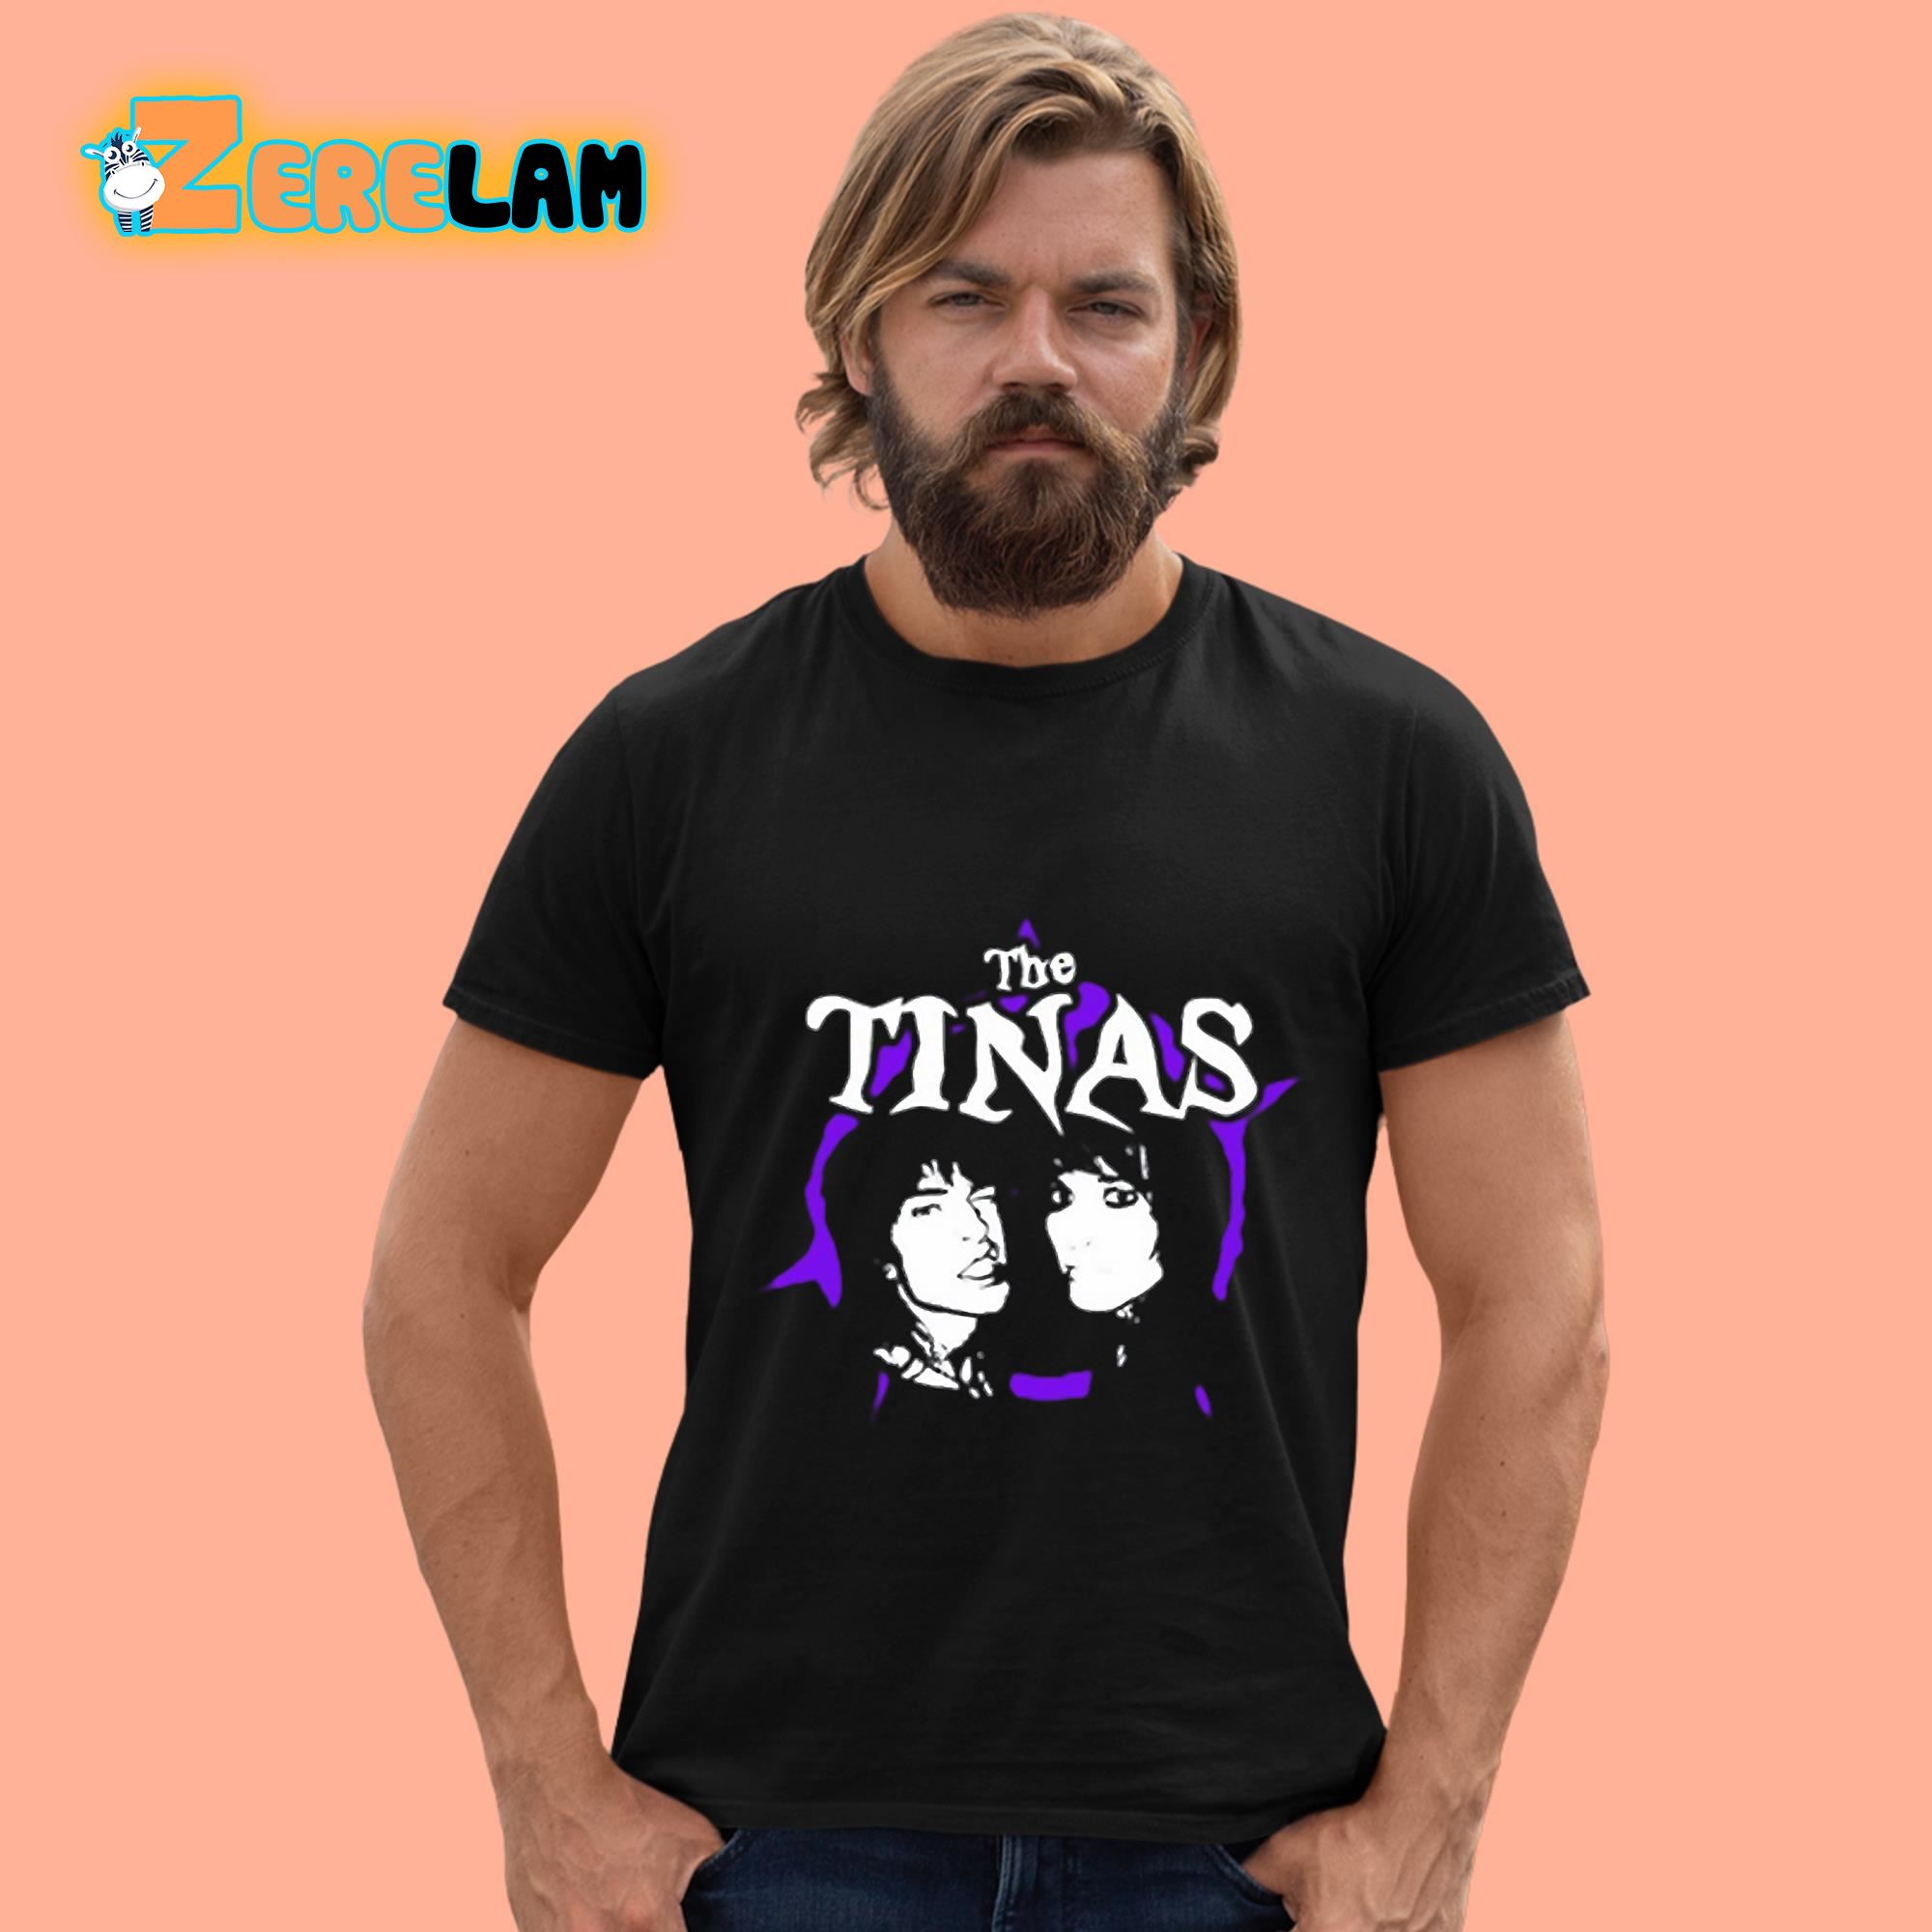 Tinas